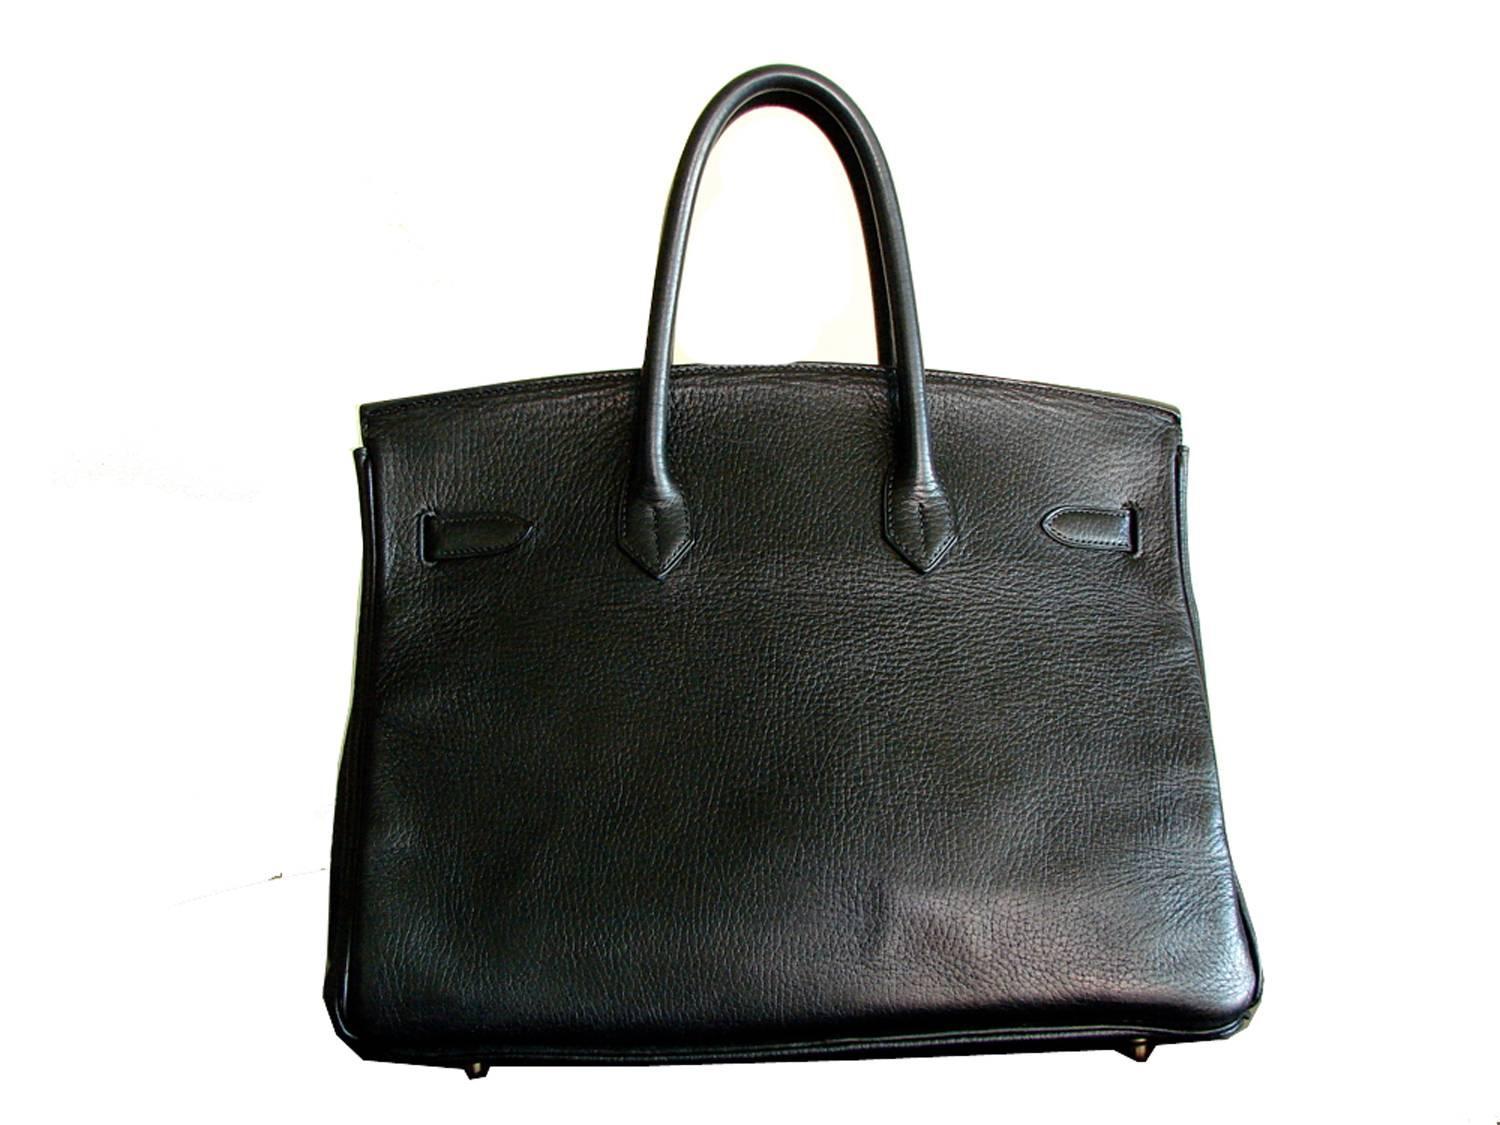 Hermes Paris Birkin Bag 35cm Black Ardennes Leather and Gold Hardware 1993 For Sale at 1stdibs